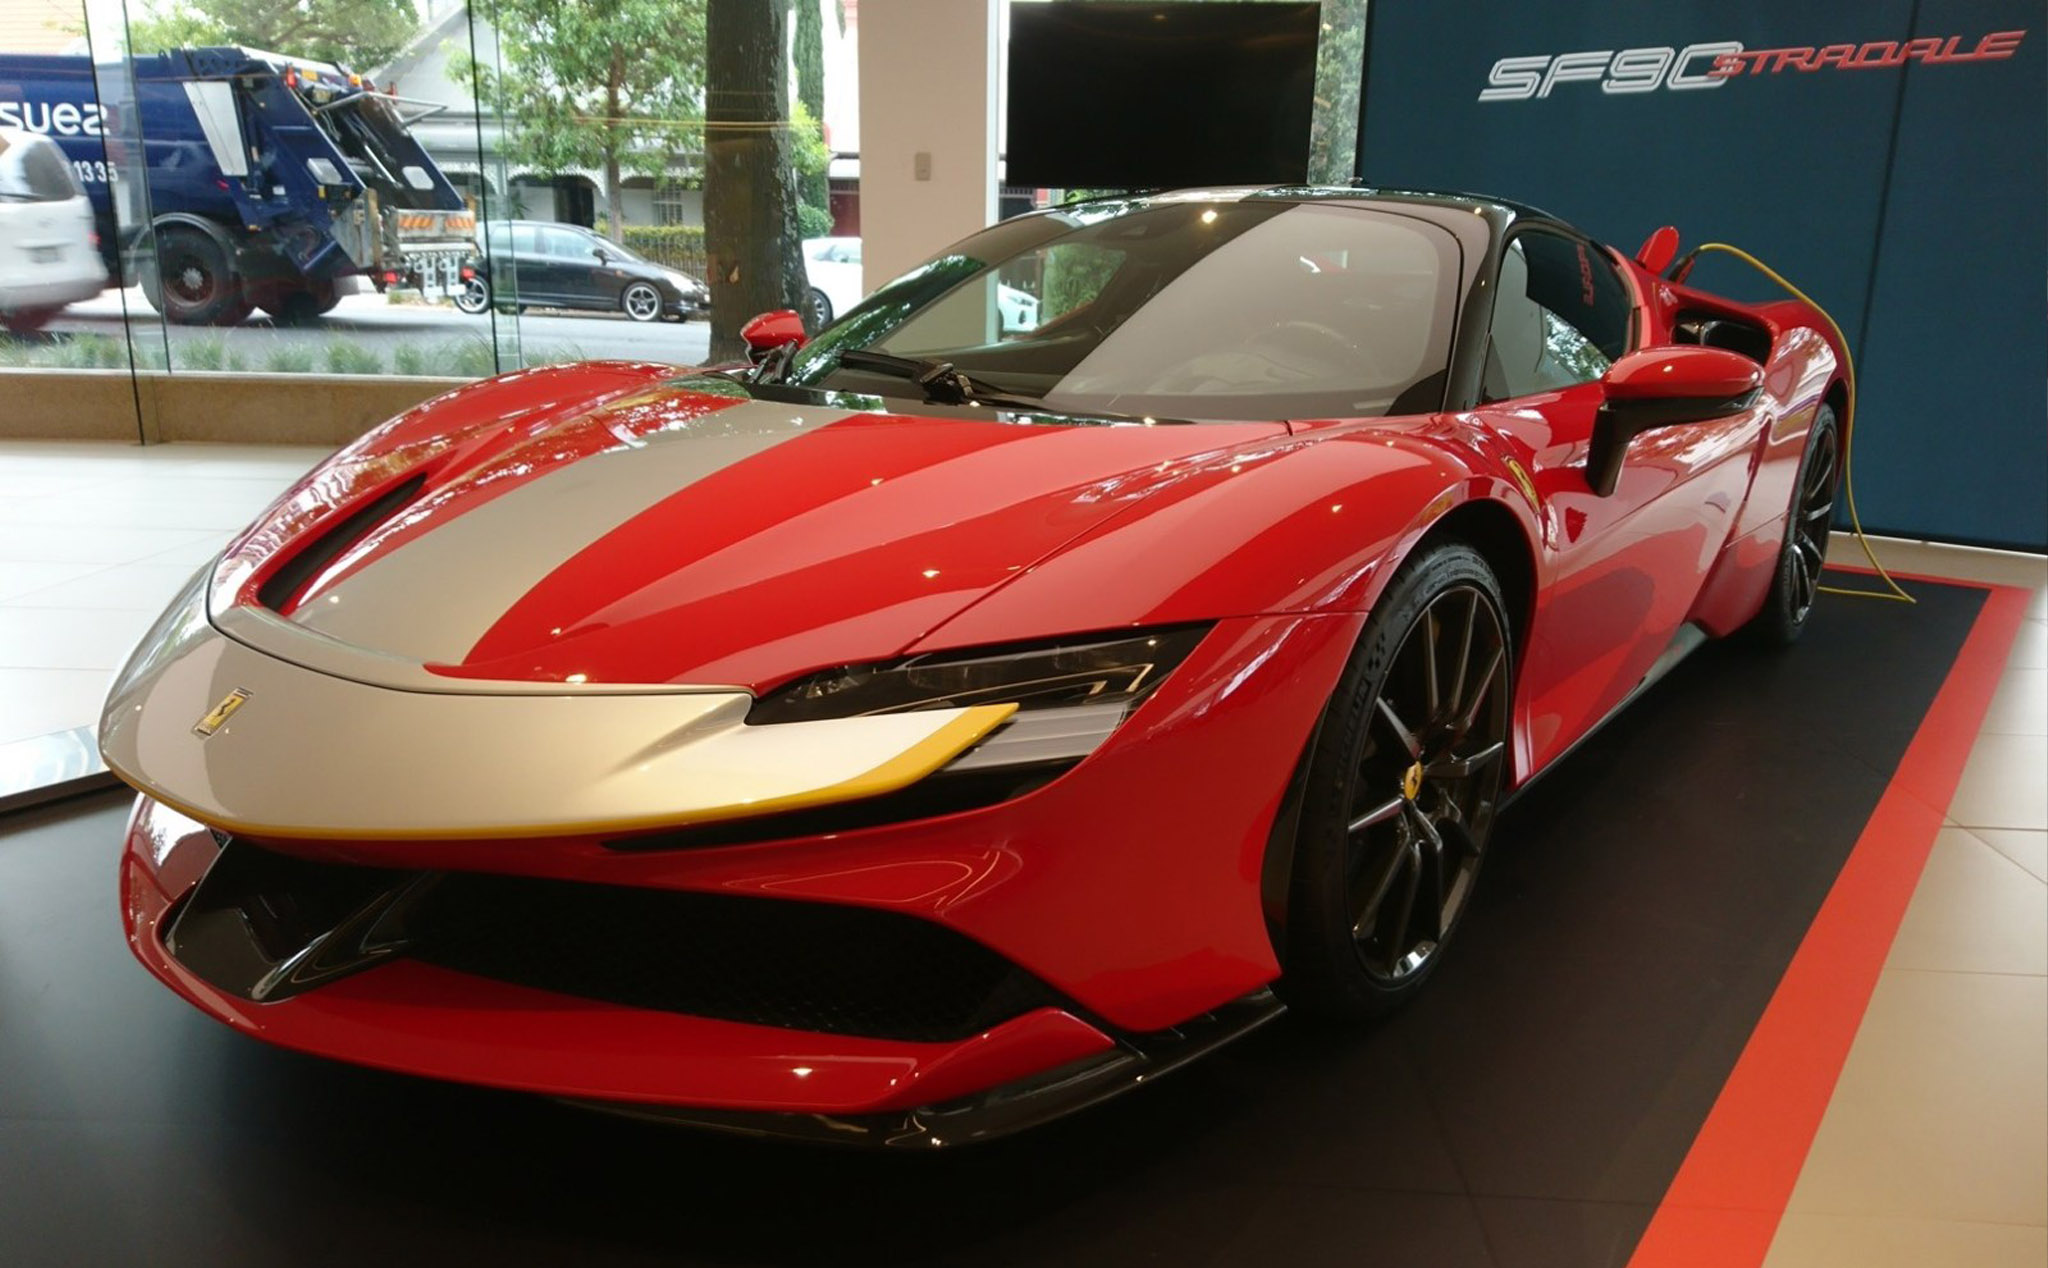 Ferrari cho rằng pin xe điện chưa đủ mạnh để làm siêu xe, nhận định này liệu có đúng?